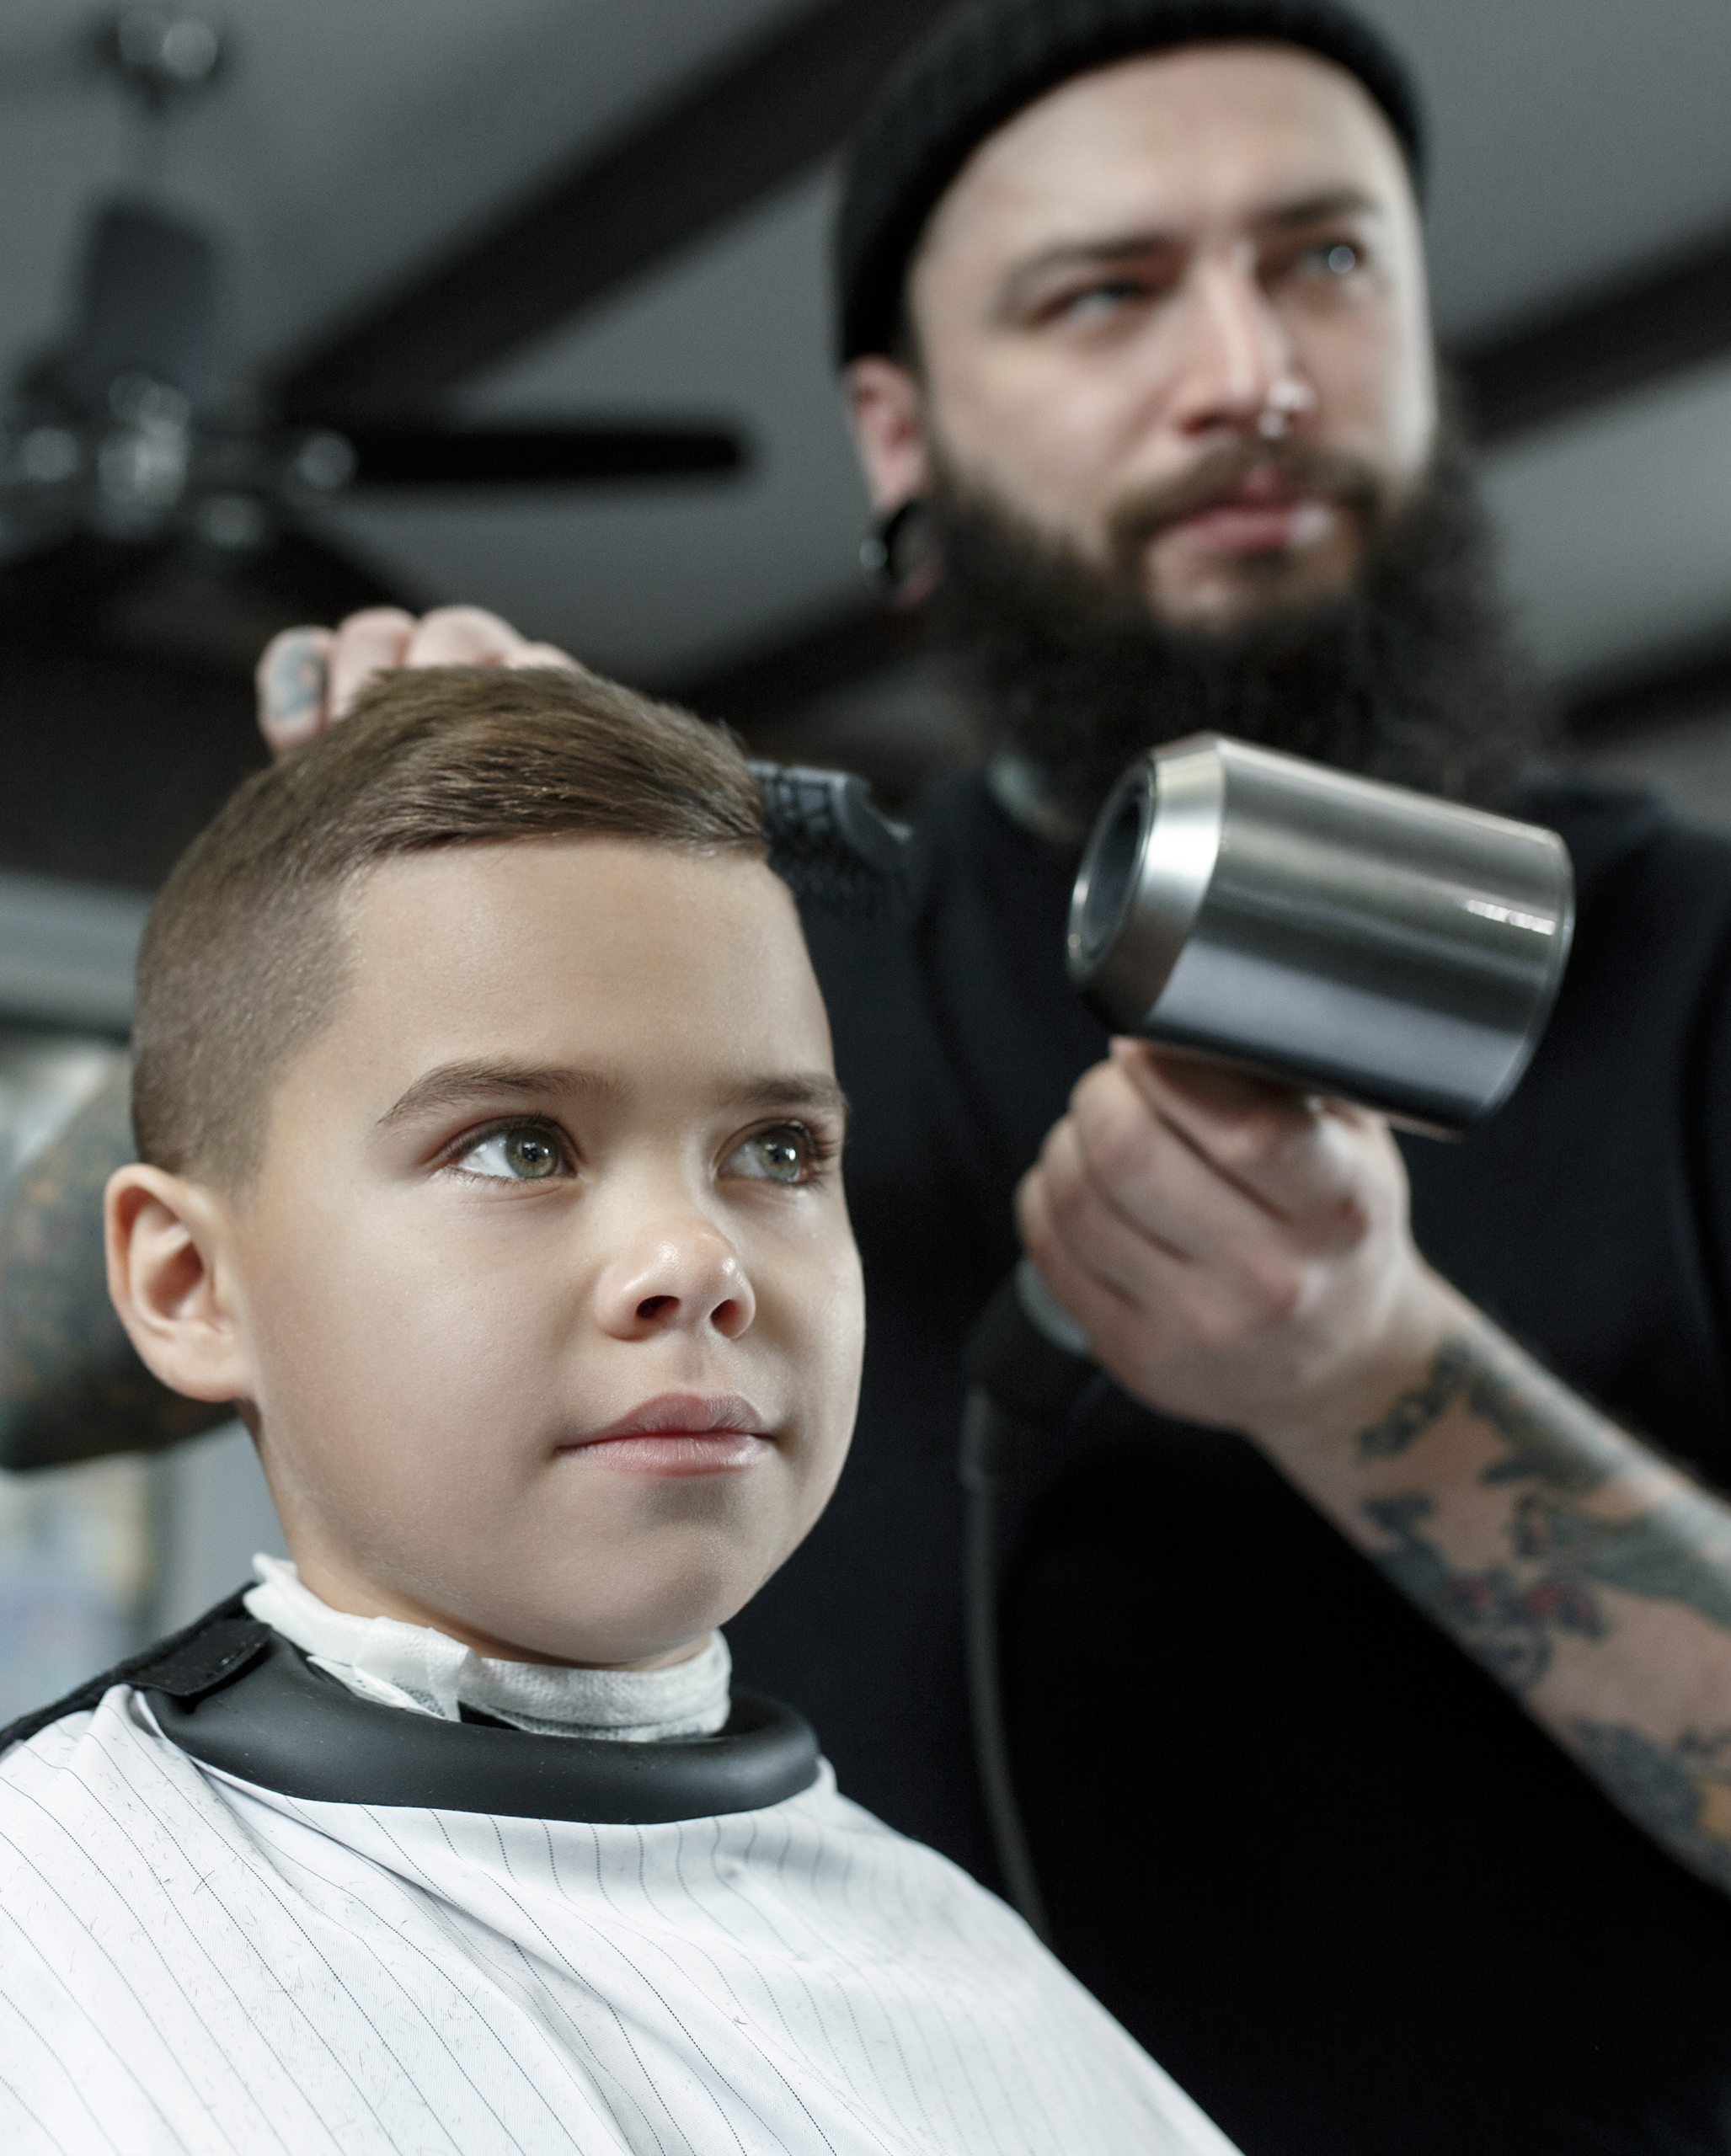 Children hairdresser cutting little boy against a dark background.